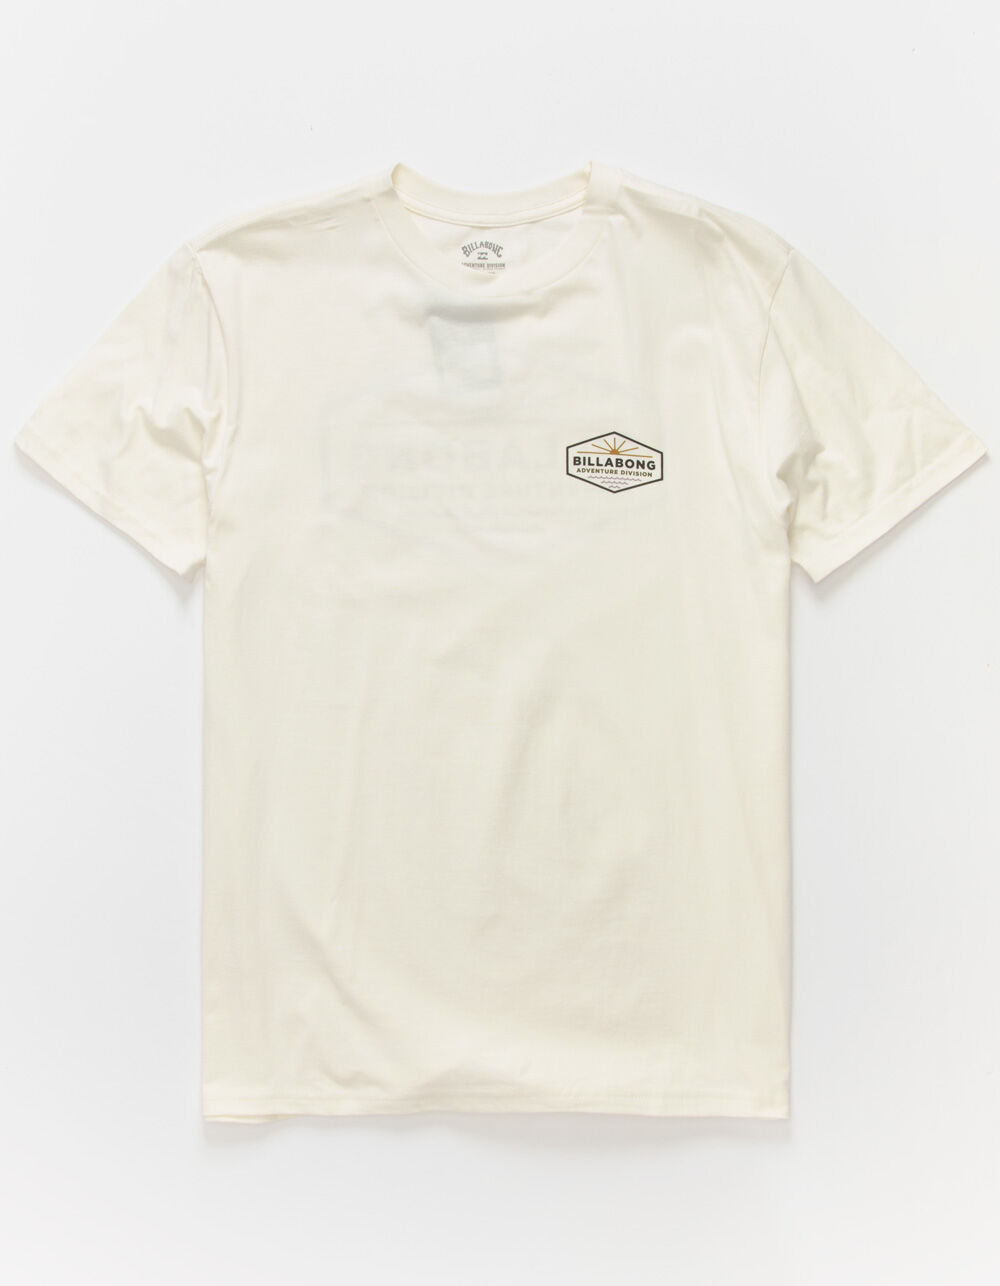 BILLABONG Cove Mens T-Shirt - OFF WHITE | Tillys